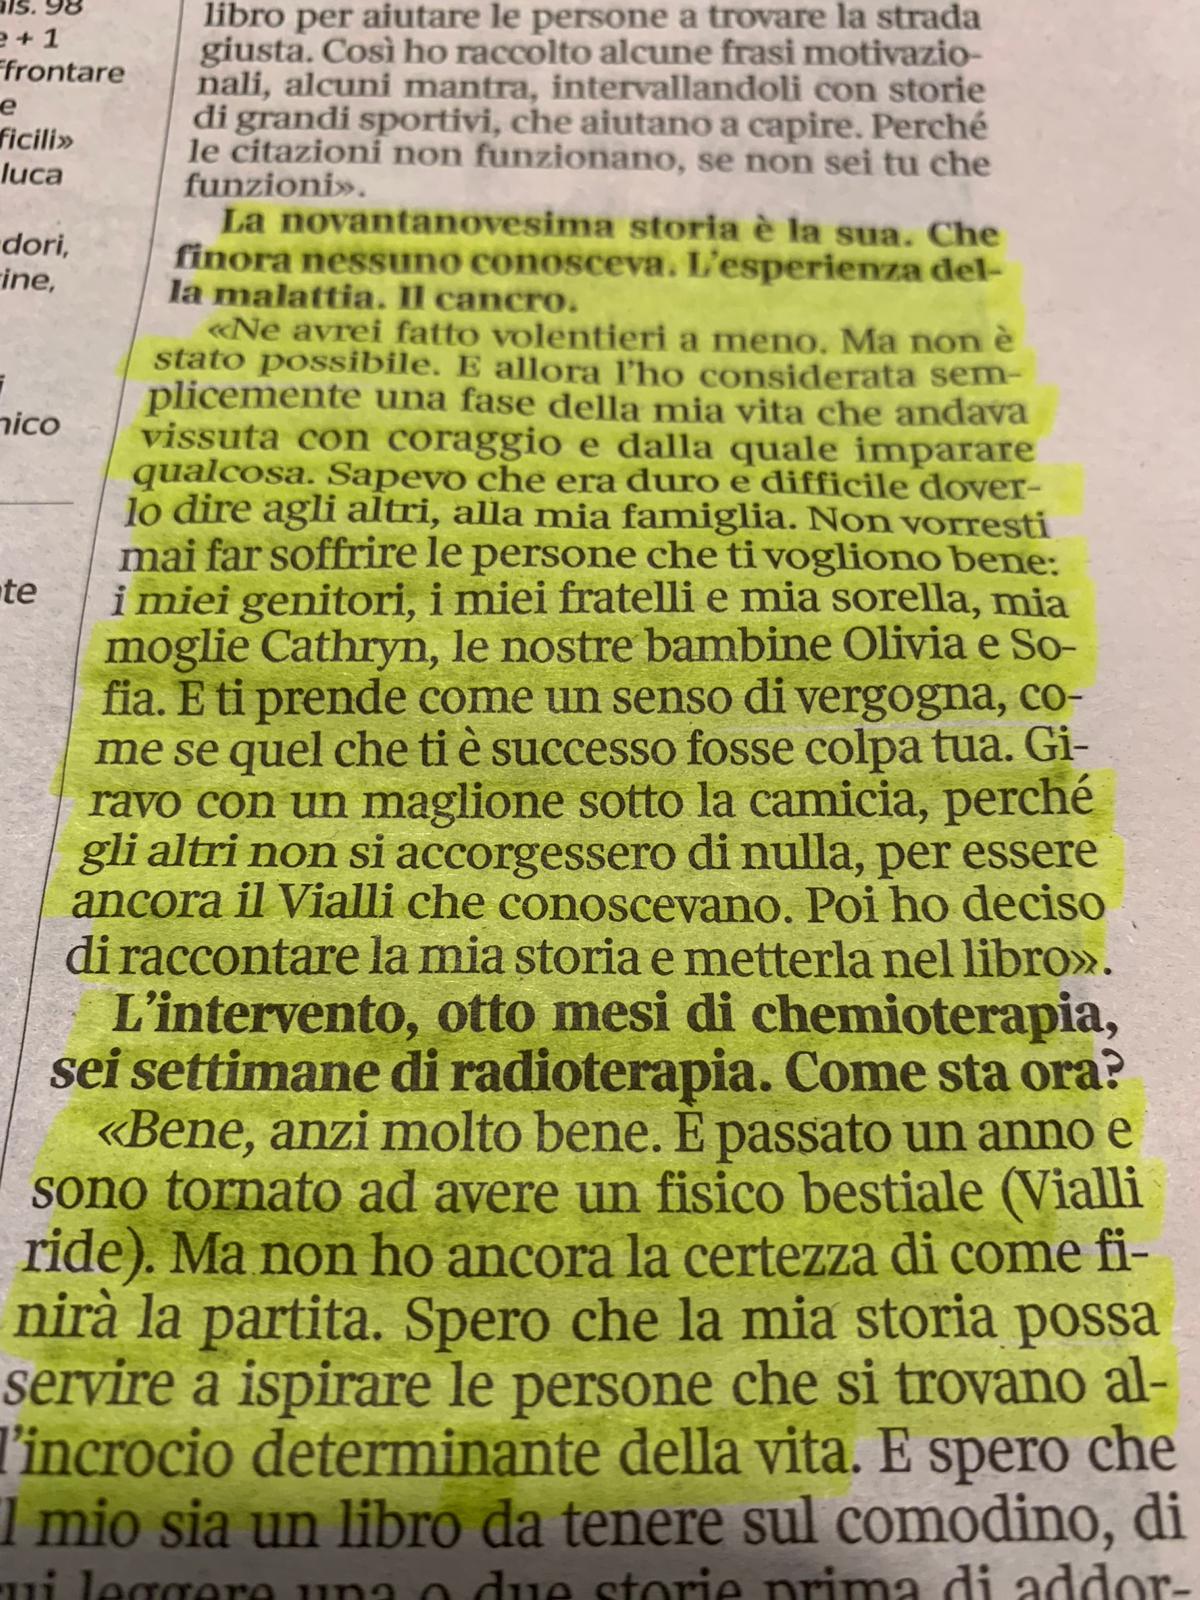 Matteo Renzi on X: Bellissima l'intervista sul Corriere di oggi